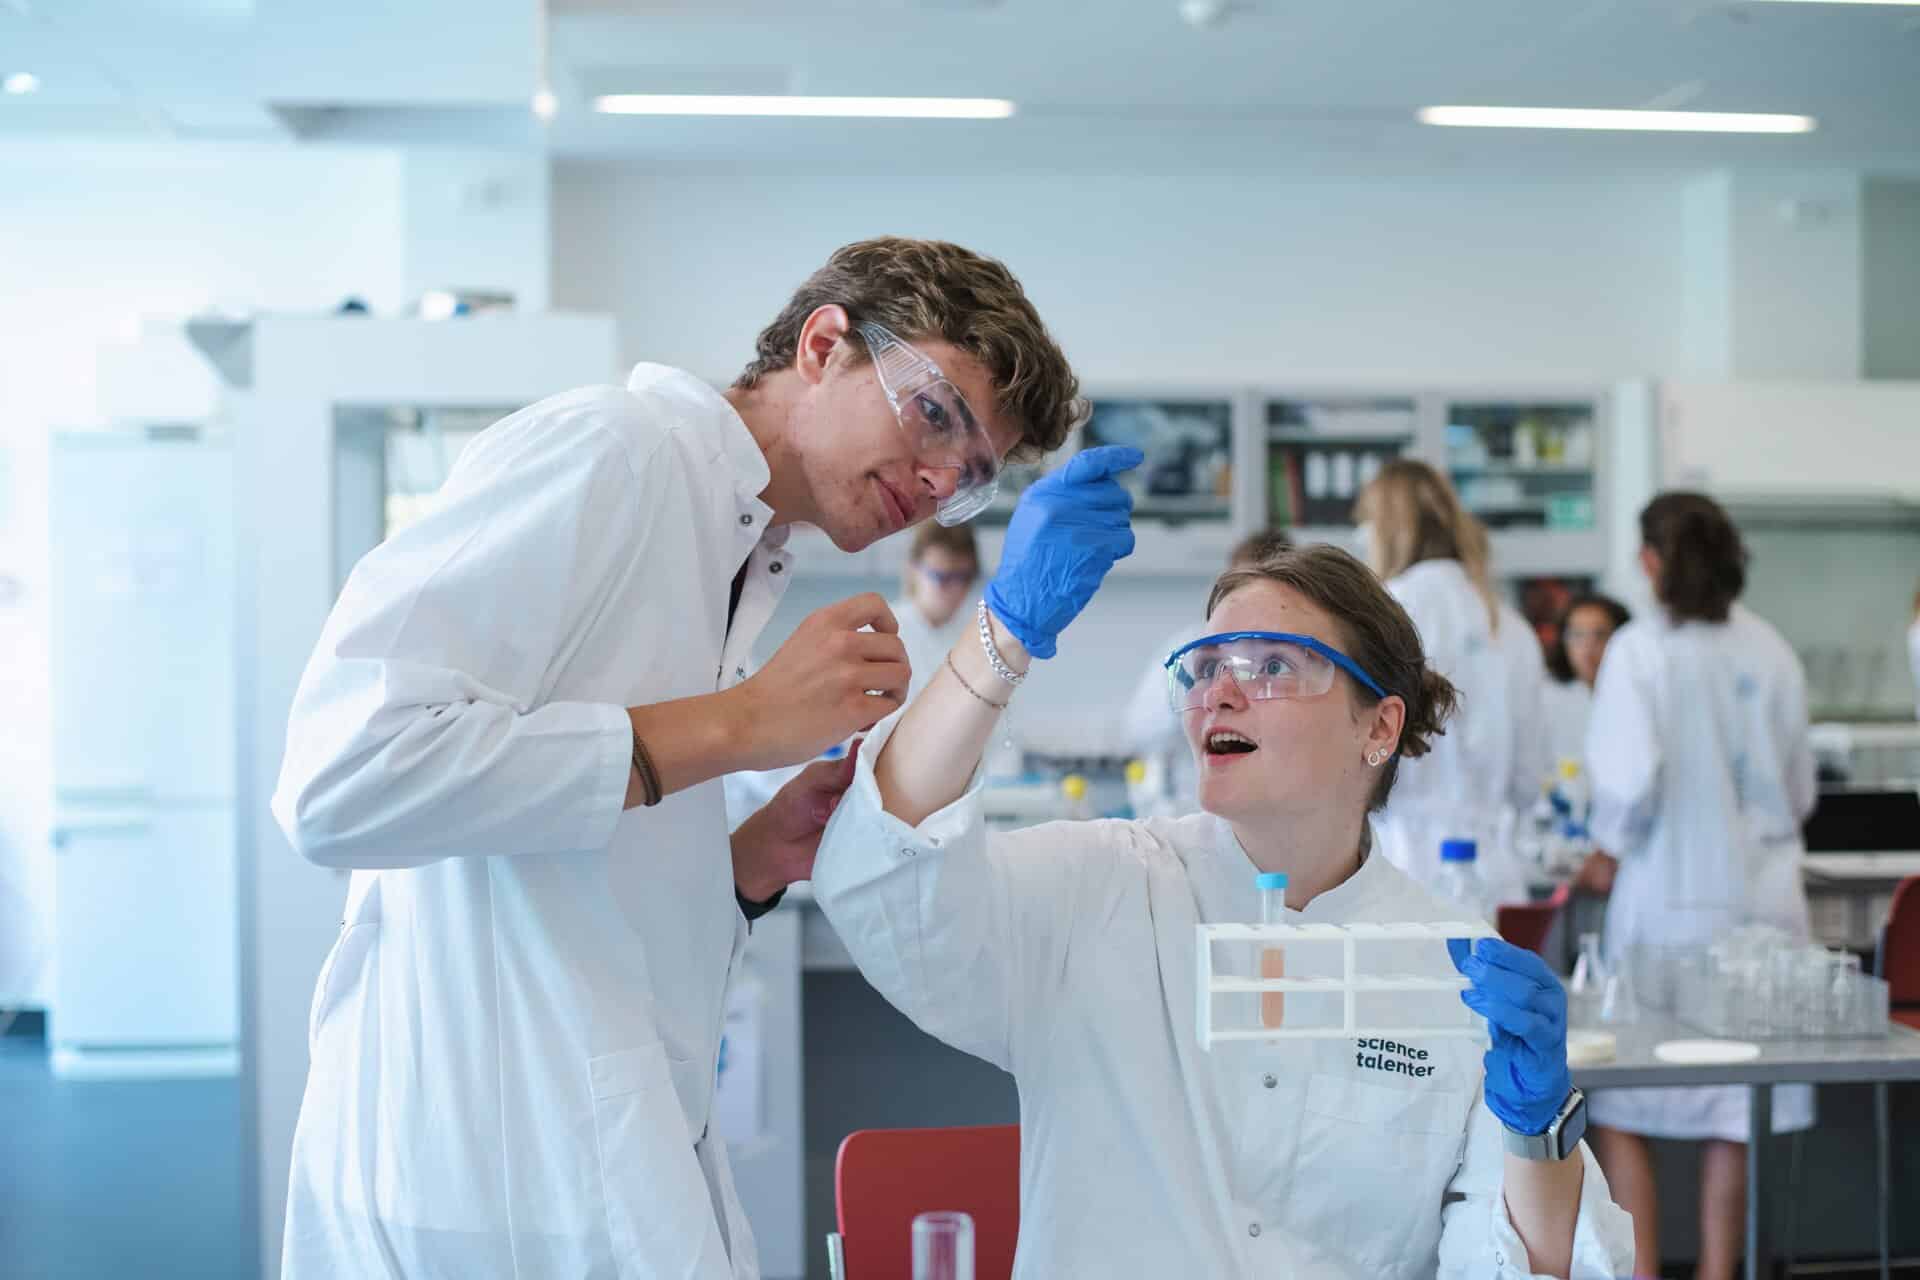 Elever i laboratoriekitler og med handsker inspicerer et reagensglas